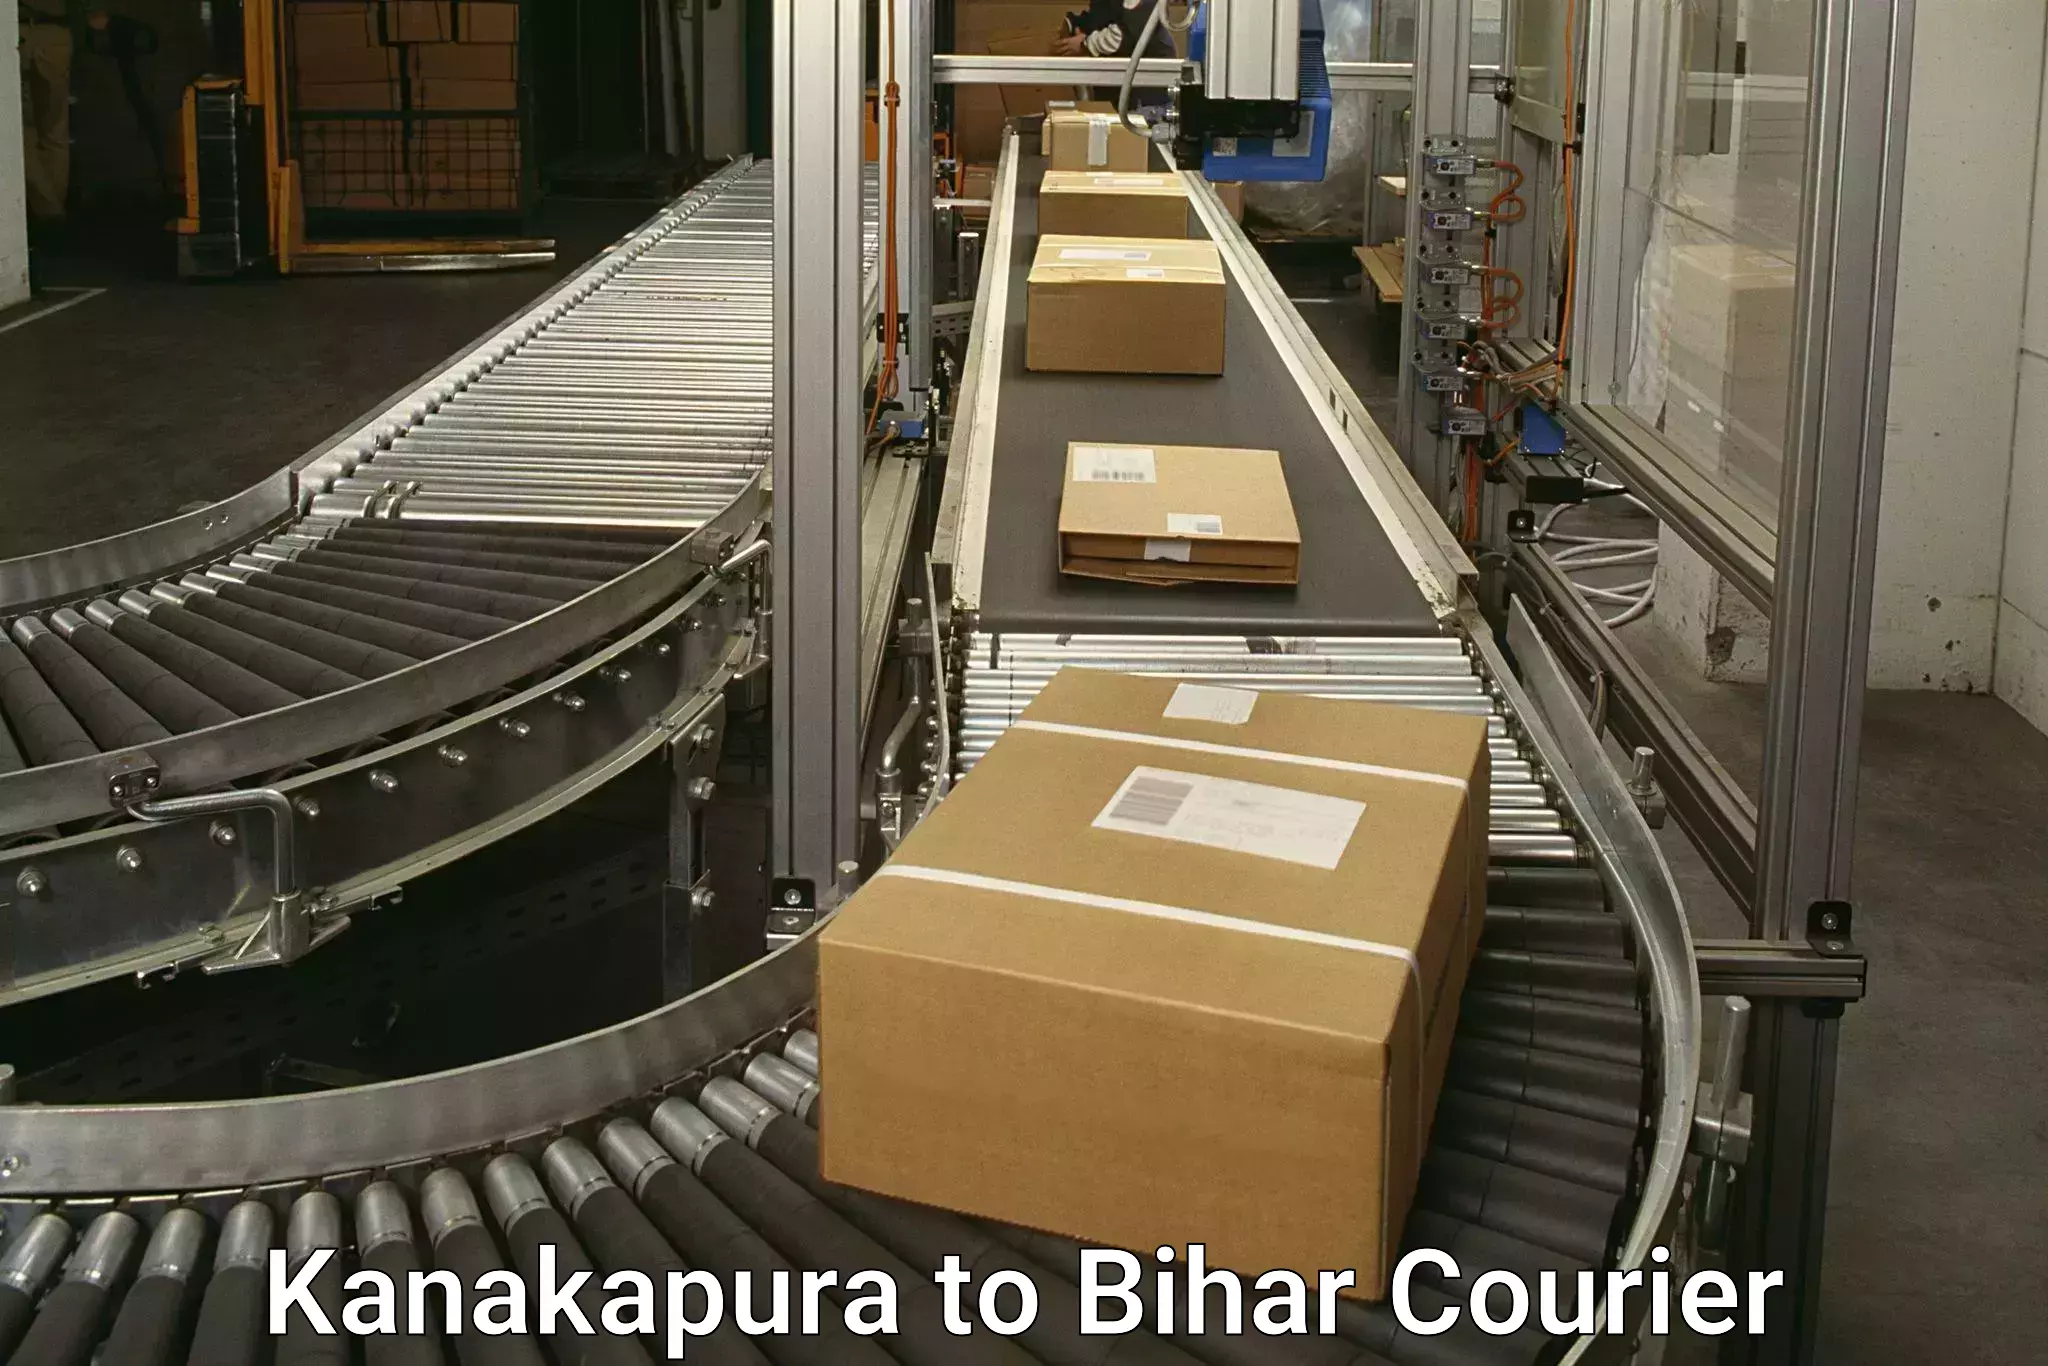 Express delivery capabilities in Kanakapura to Alamnagar